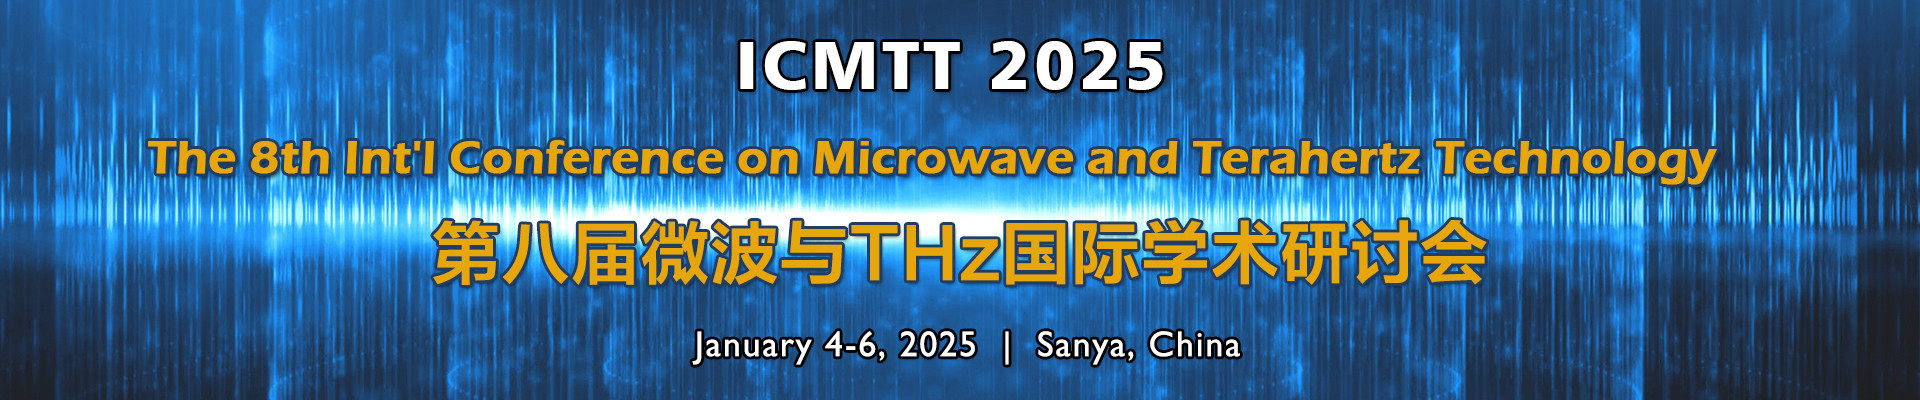 第八届微波与THz国际学术研讨会(ICMTT 2025)